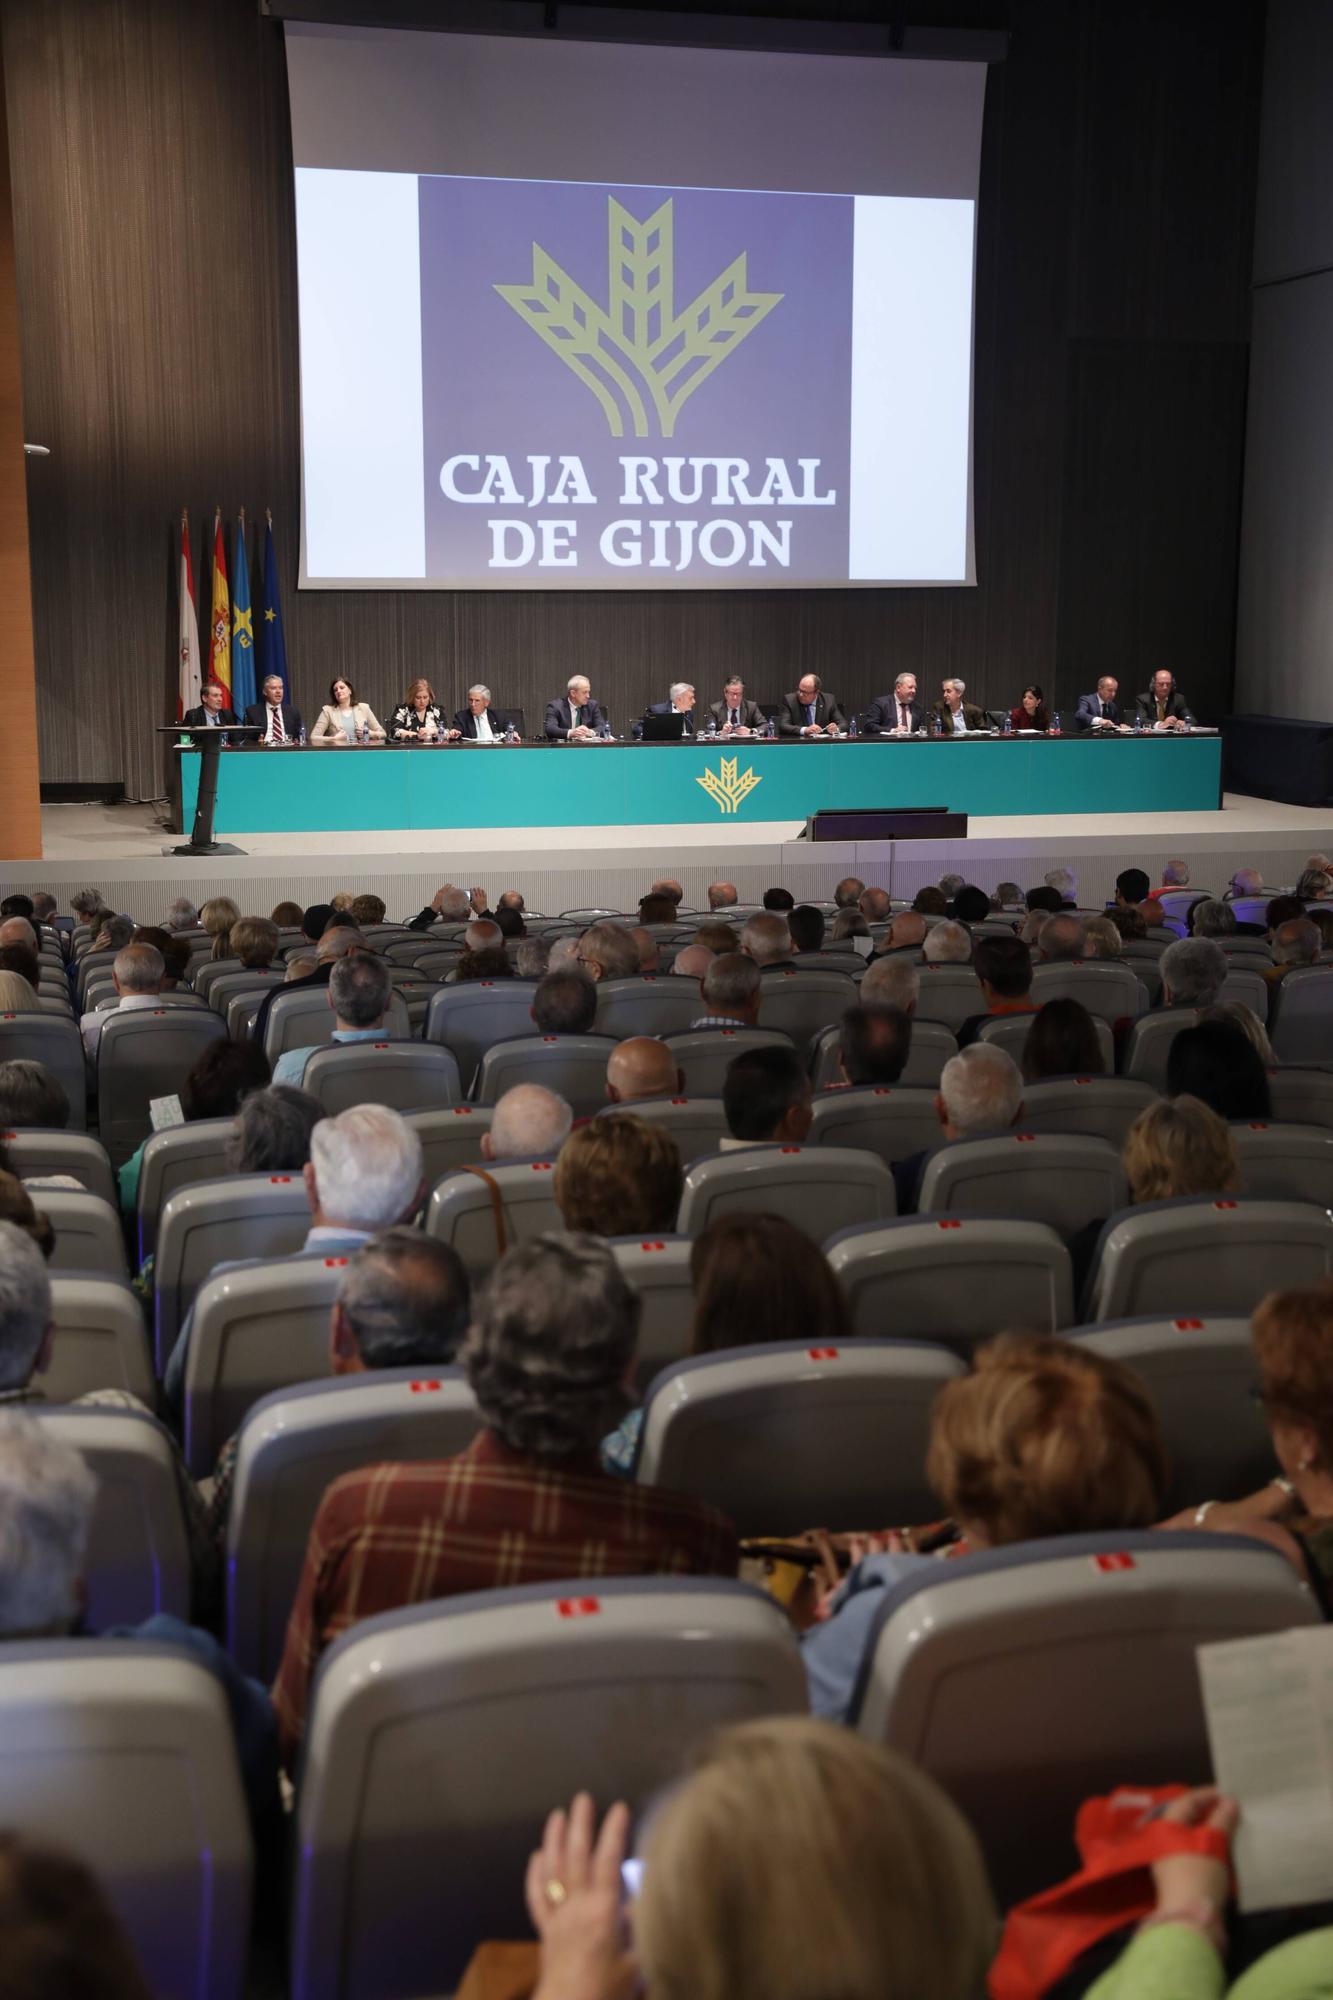 La asamblea de Caja Rural de Gijón, en imágenes